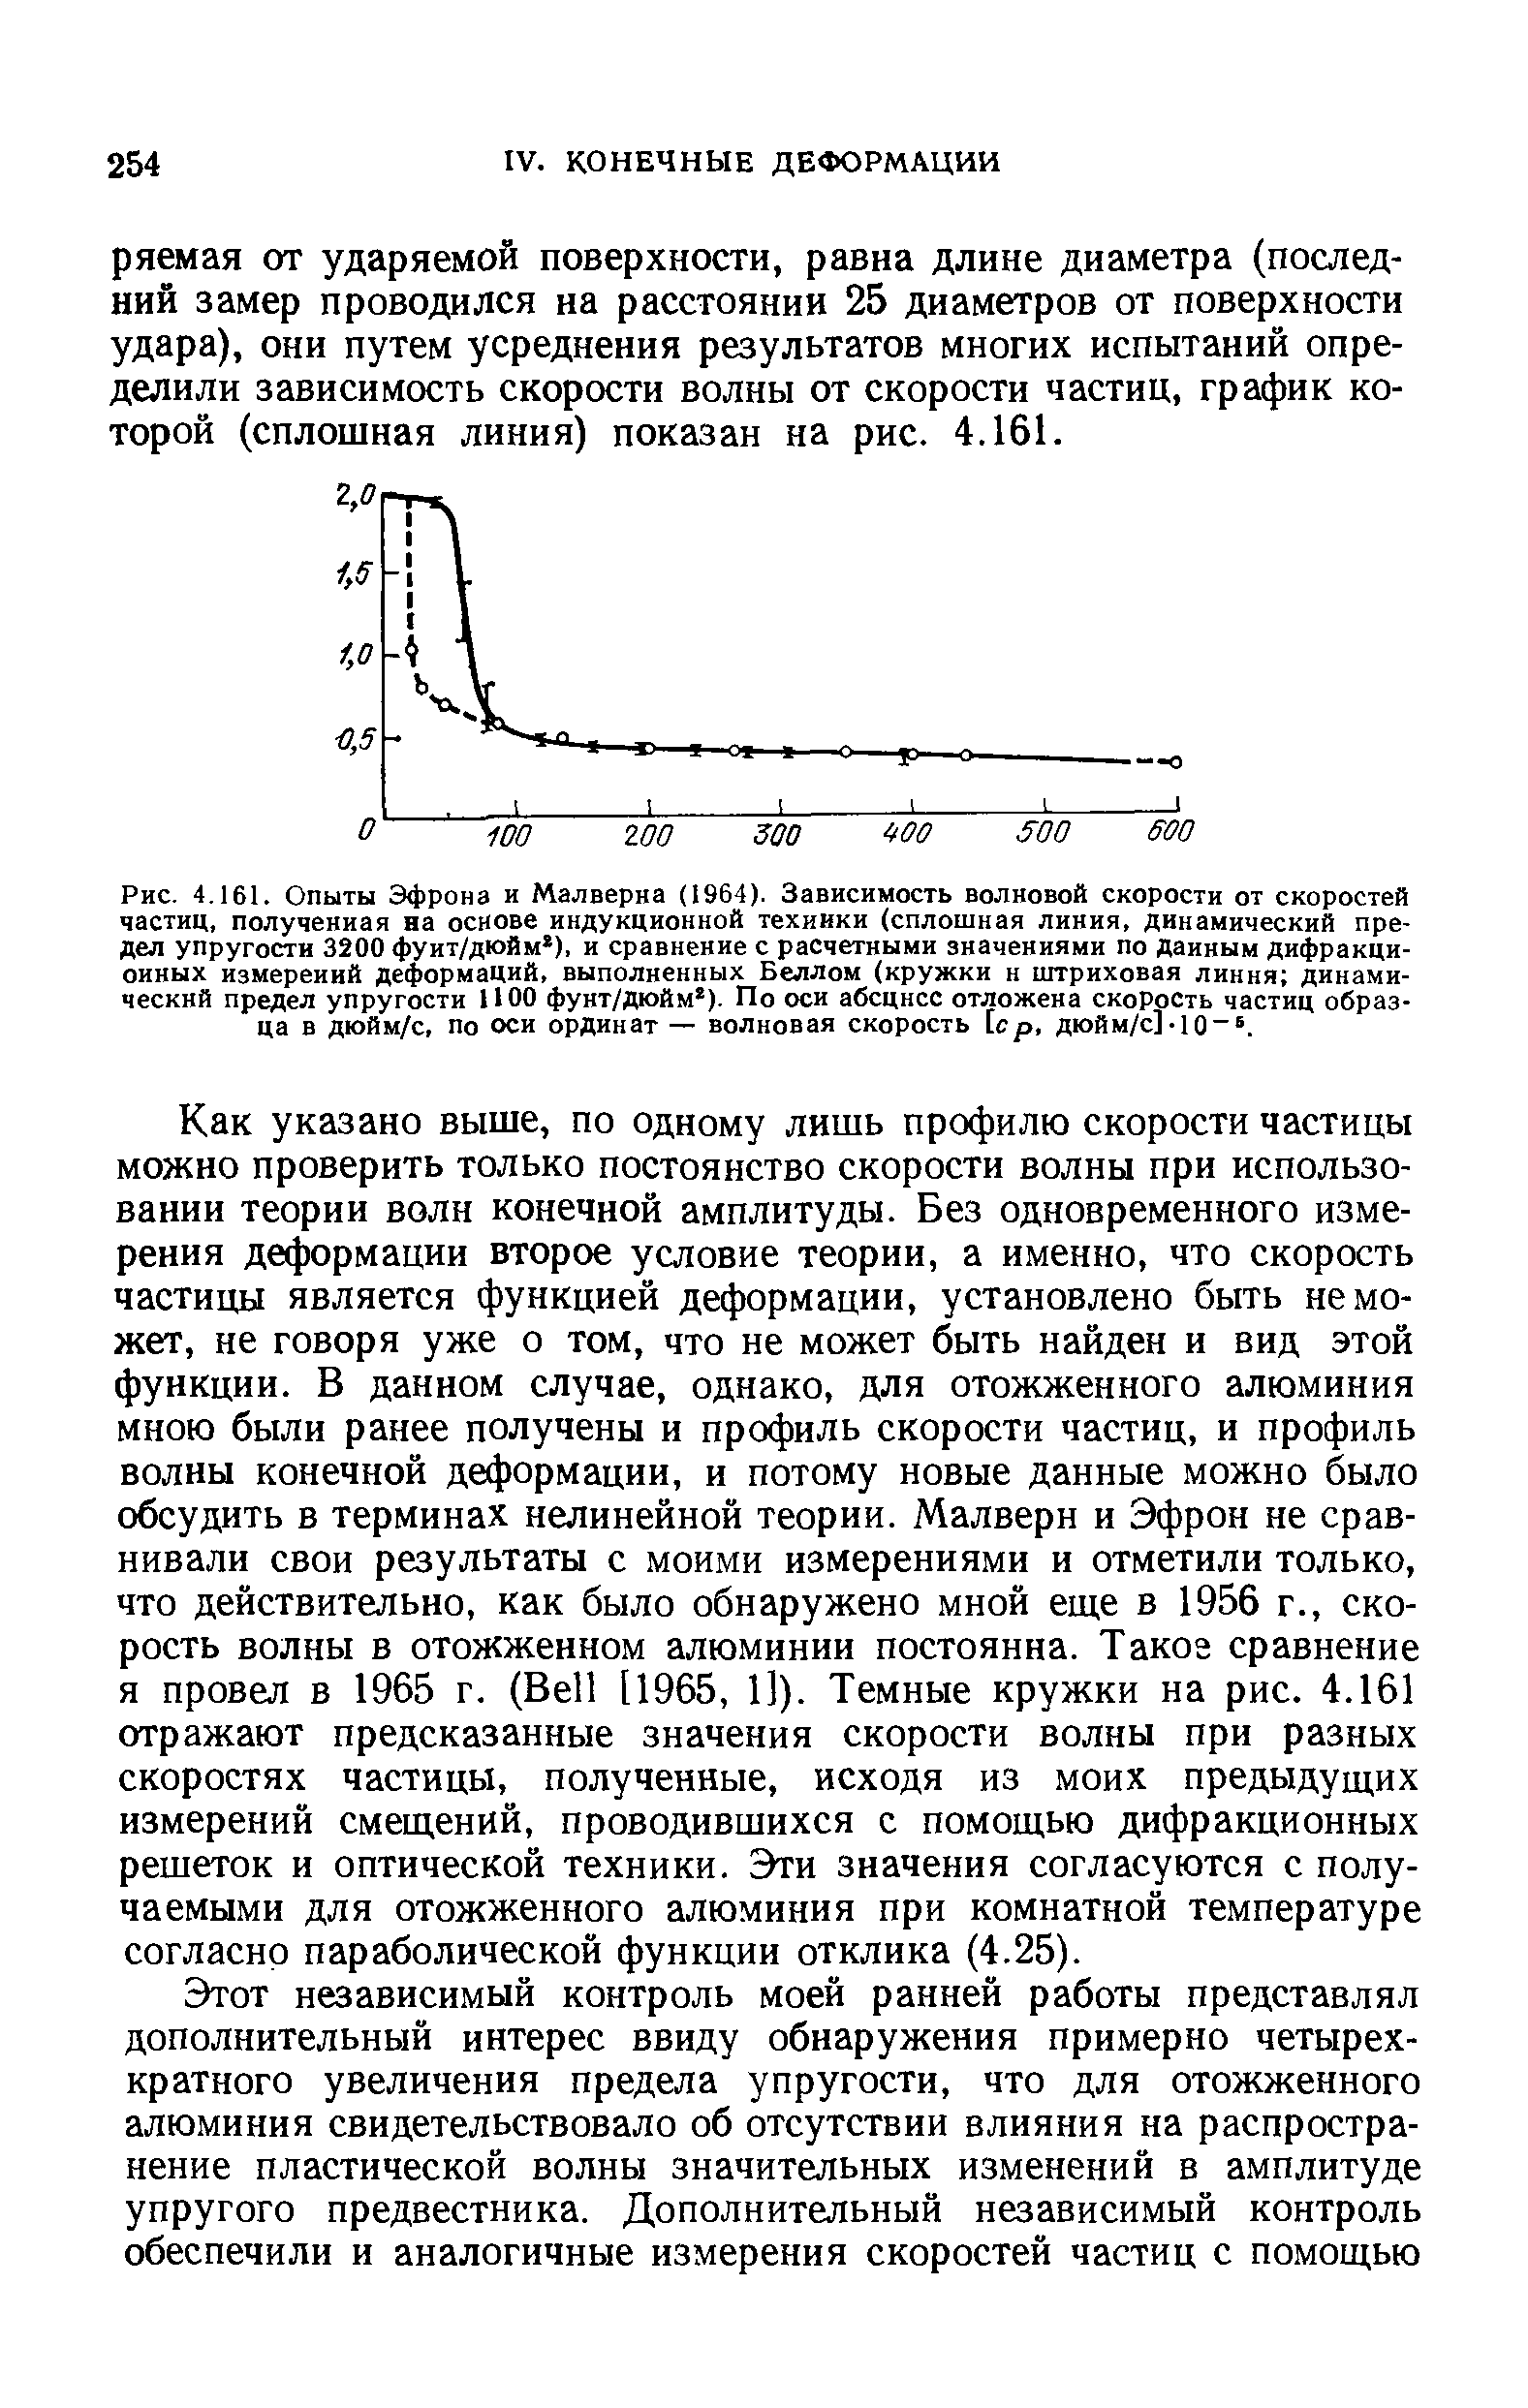 Рис. 4.161. Опыты Эфрона и Малверна (1964). Зависимость <a href="/info/19493">волновой скорости</a> от <a href="/info/203588">скоростей частиц</a>, полученная на основе индукционной техники (<a href="/info/232485">сплошная линия</a>, динамический предел упругости 3200 фунт/дюйм ), и сравнение с расчетными значениями по данным дифракционных <a href="/info/85967">измерений деформаций</a>, выполненных Беллом (кружки н <a href="/info/1024">штриховая линия</a> динамический предел упругости 1100 фунт/дюйм ). По оси абсцисс отложена <a href="/info/203588">скорость частиц</a> образца в дюйм/с, по оси ординат — <a href="/info/19493">волновая скорость</a> [ср, дюйм/с].10 .
